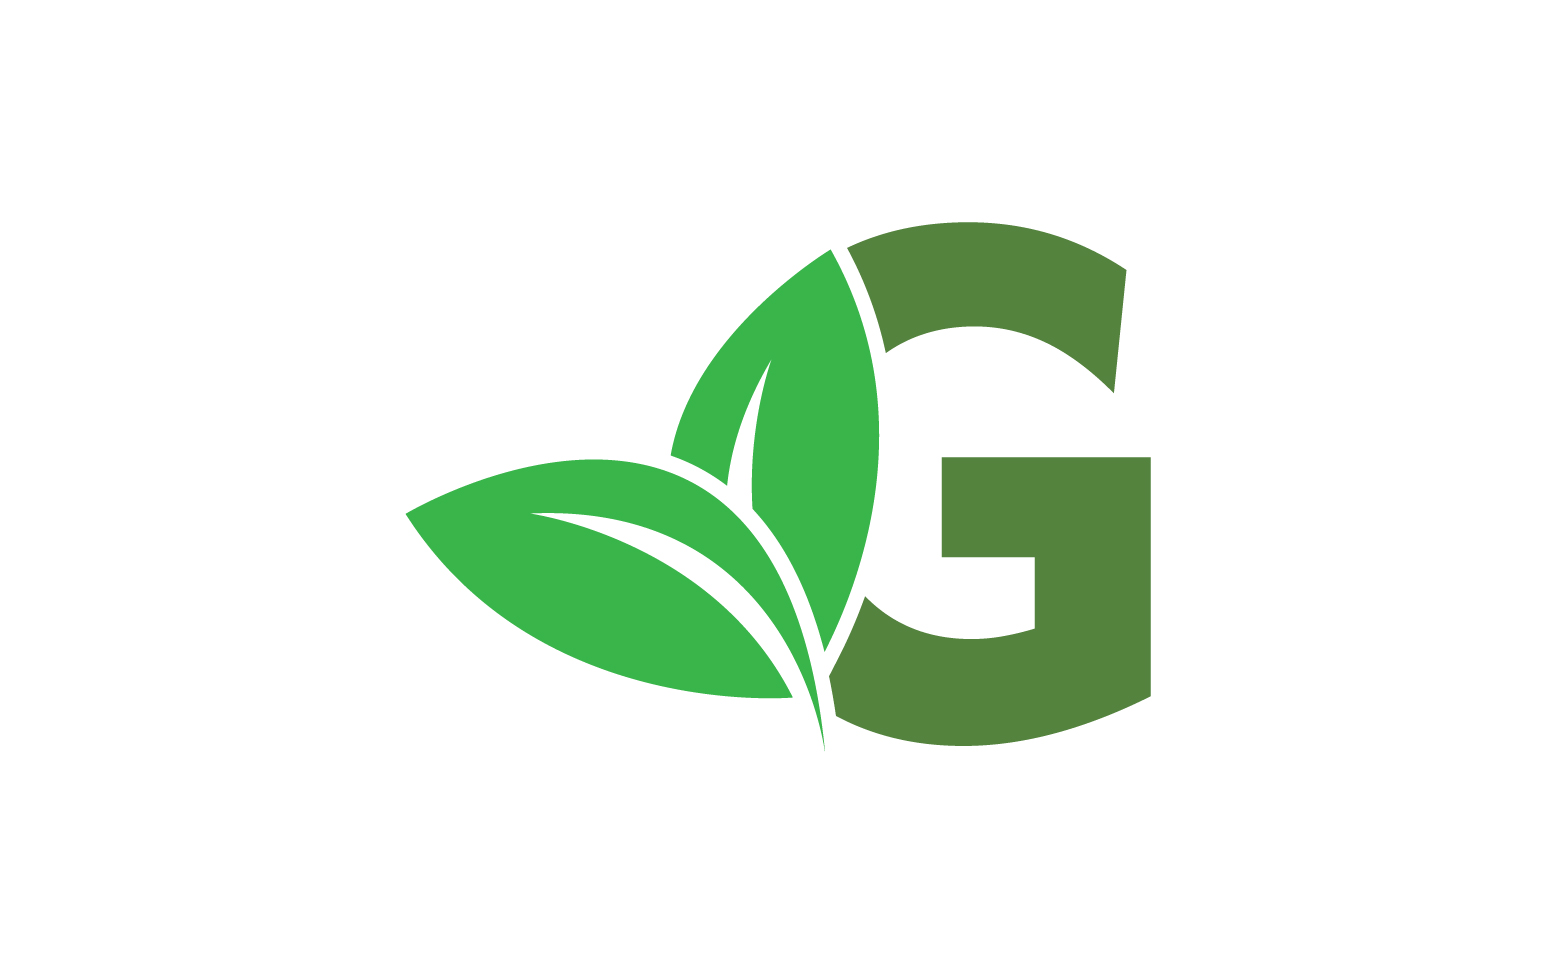 G letter leaf green logo icon version v9